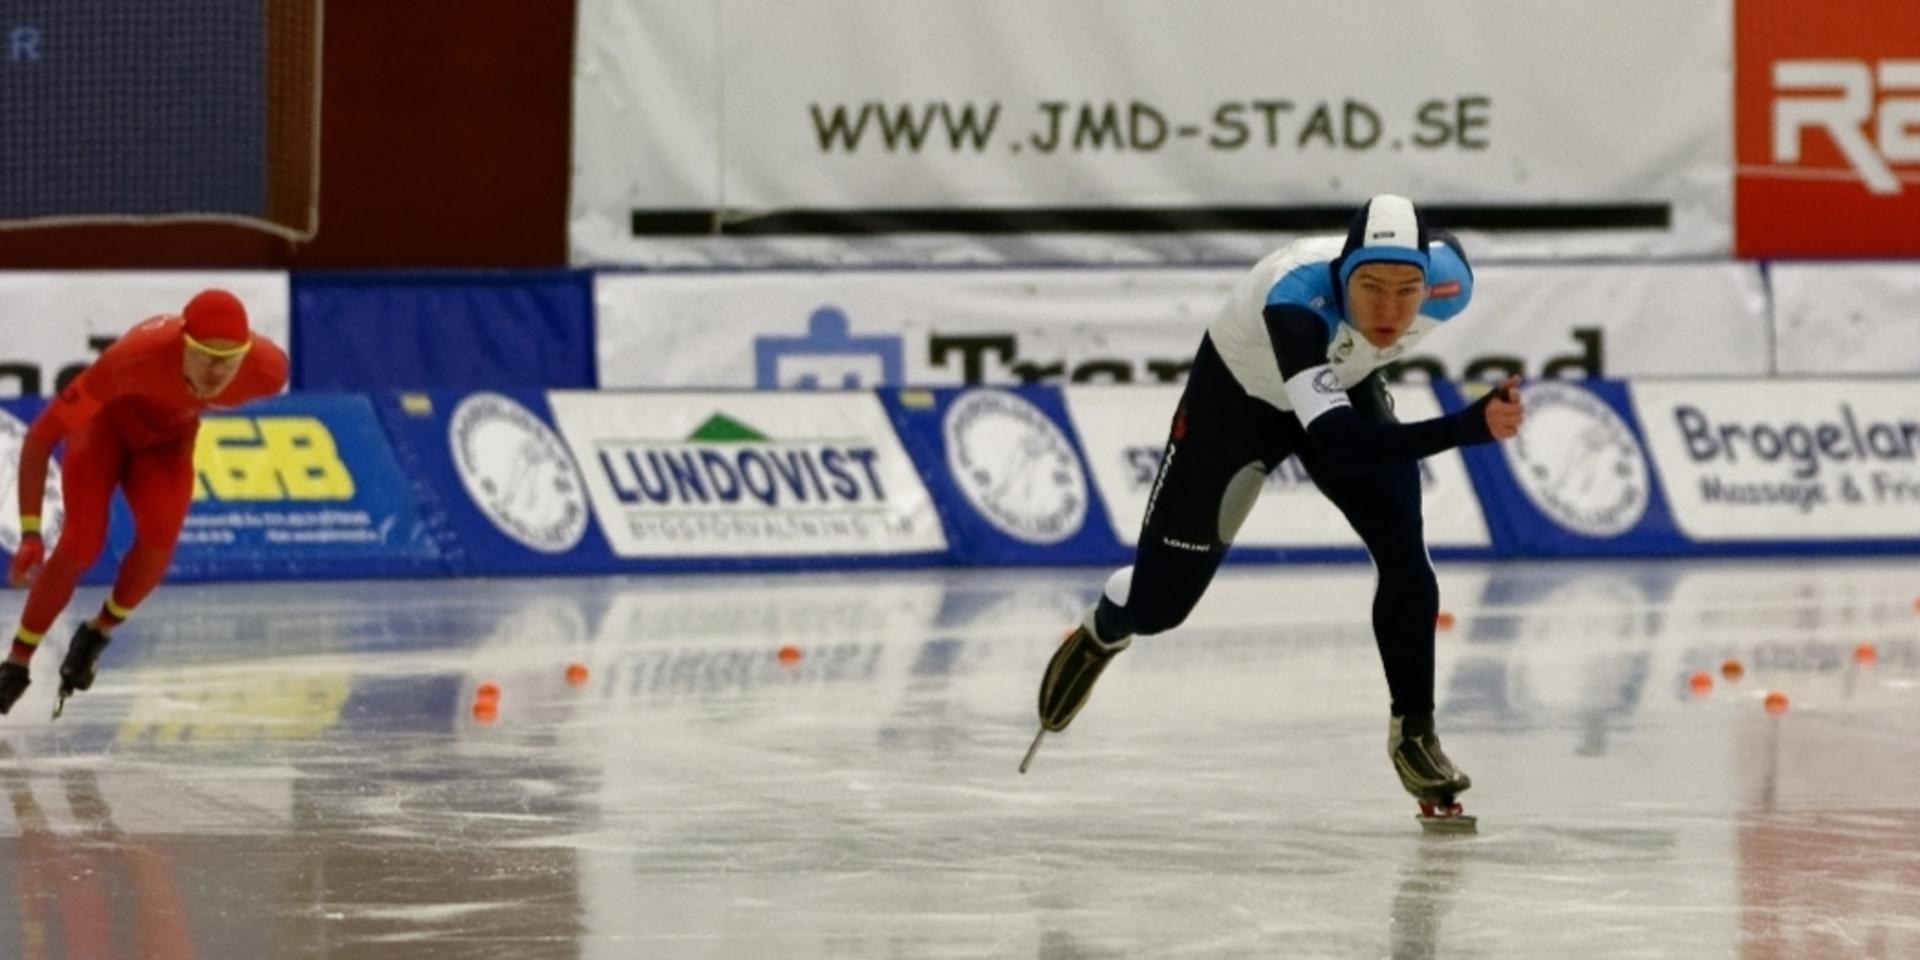 SK Trollhättans Wilhelm Ekensskär slog nytt banrekord i ABB Arena i Västerås – två gånger om.